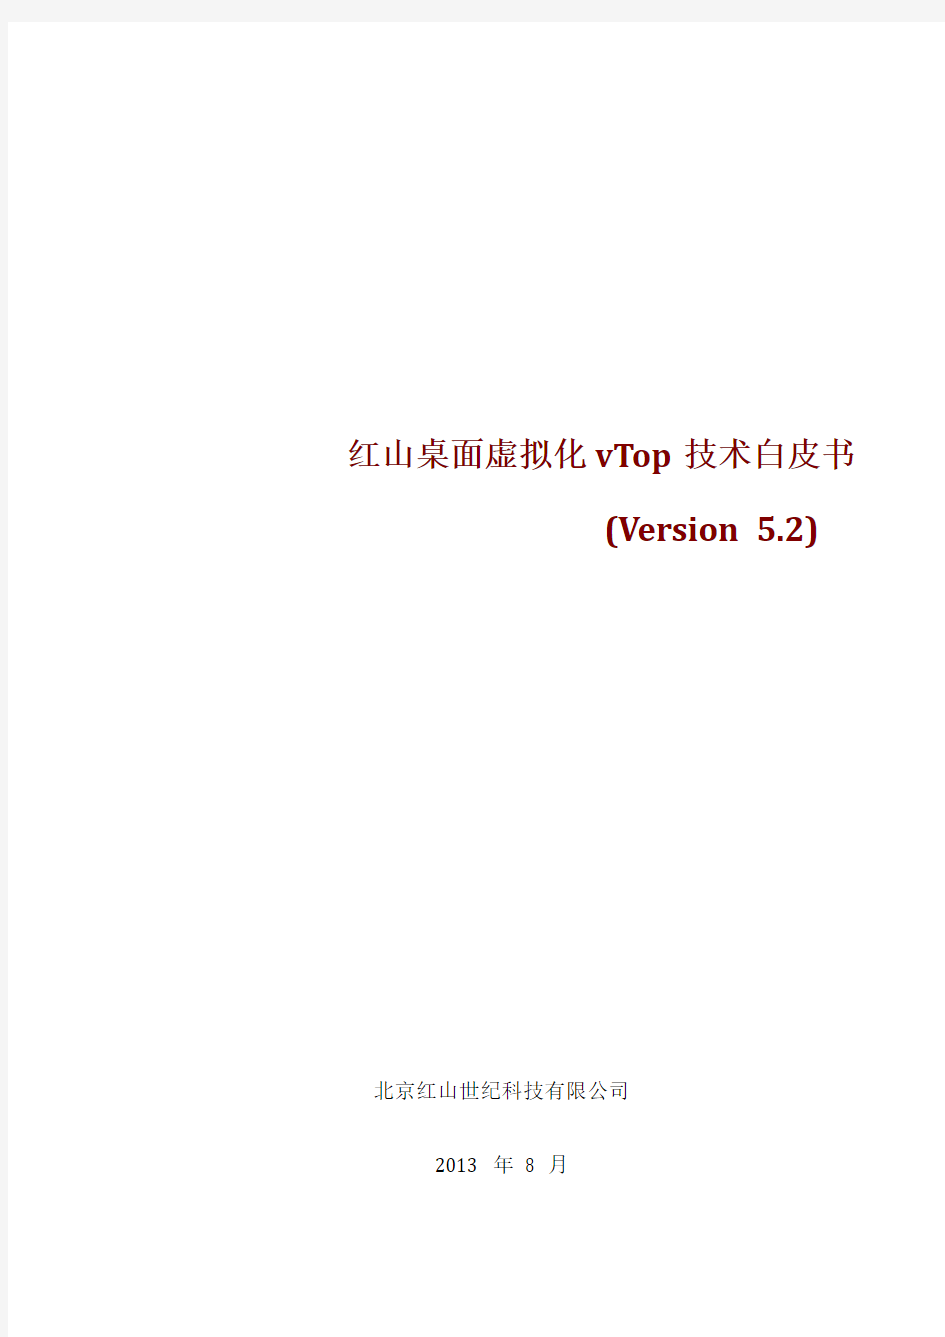 红山世纪桌面虚拟化vTop技术白皮书v5.2